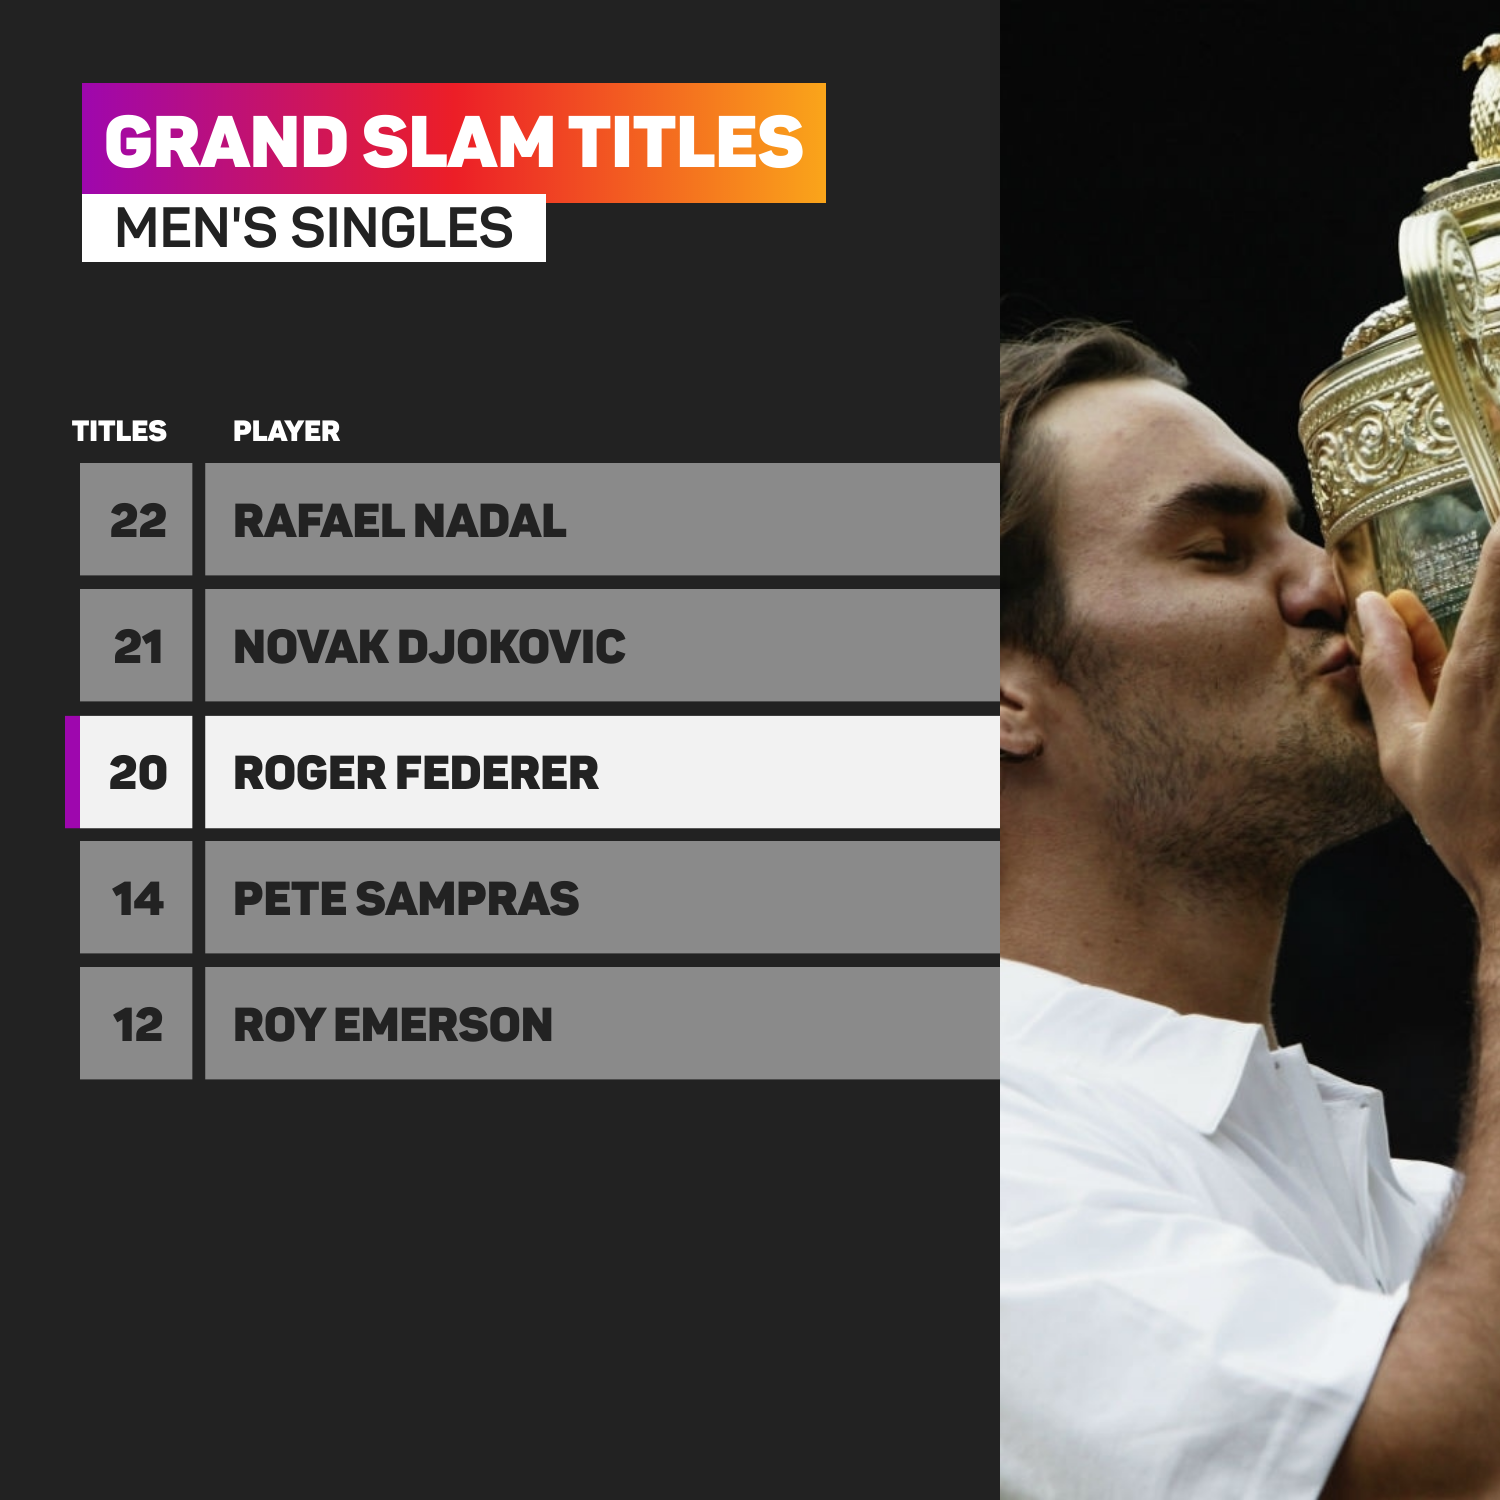 Roger Federer has won 20 grand slam titles